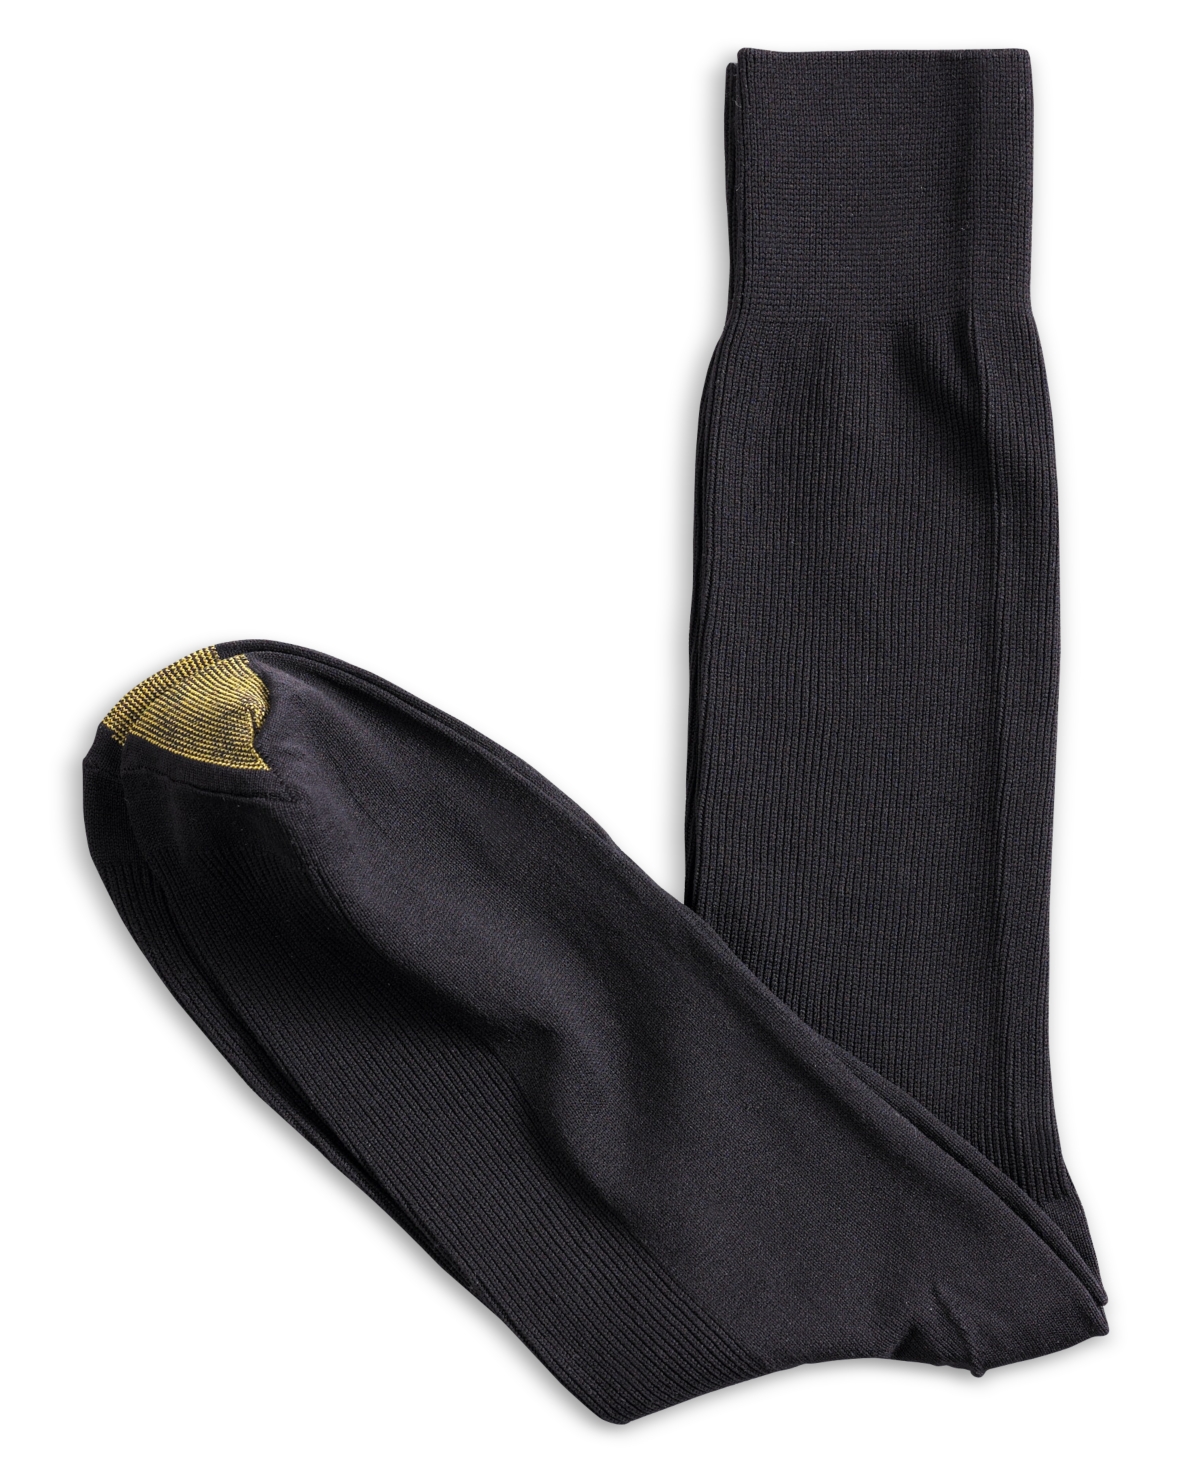 Men's 3-Pack Dress Metropolitan Crew Socks - Black